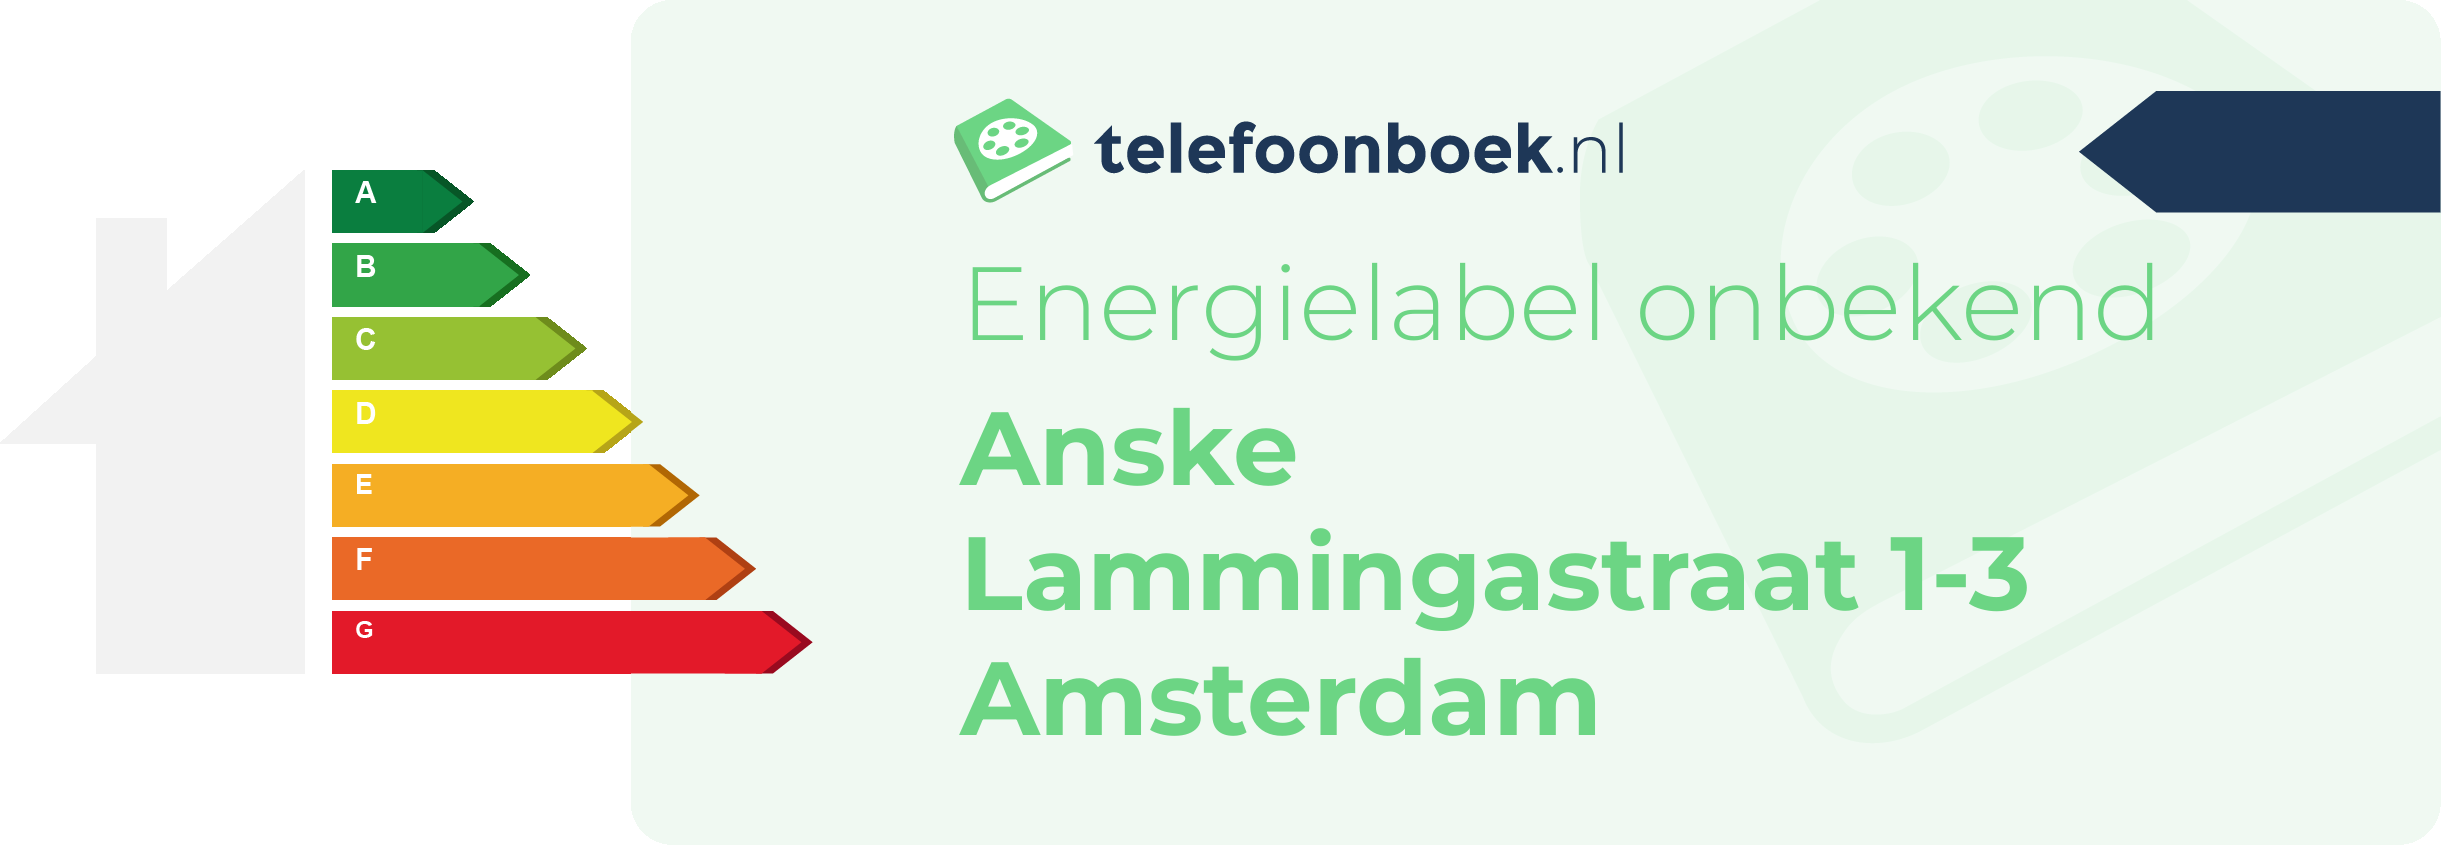 Energielabel Anske Lammingastraat 1-3 Amsterdam